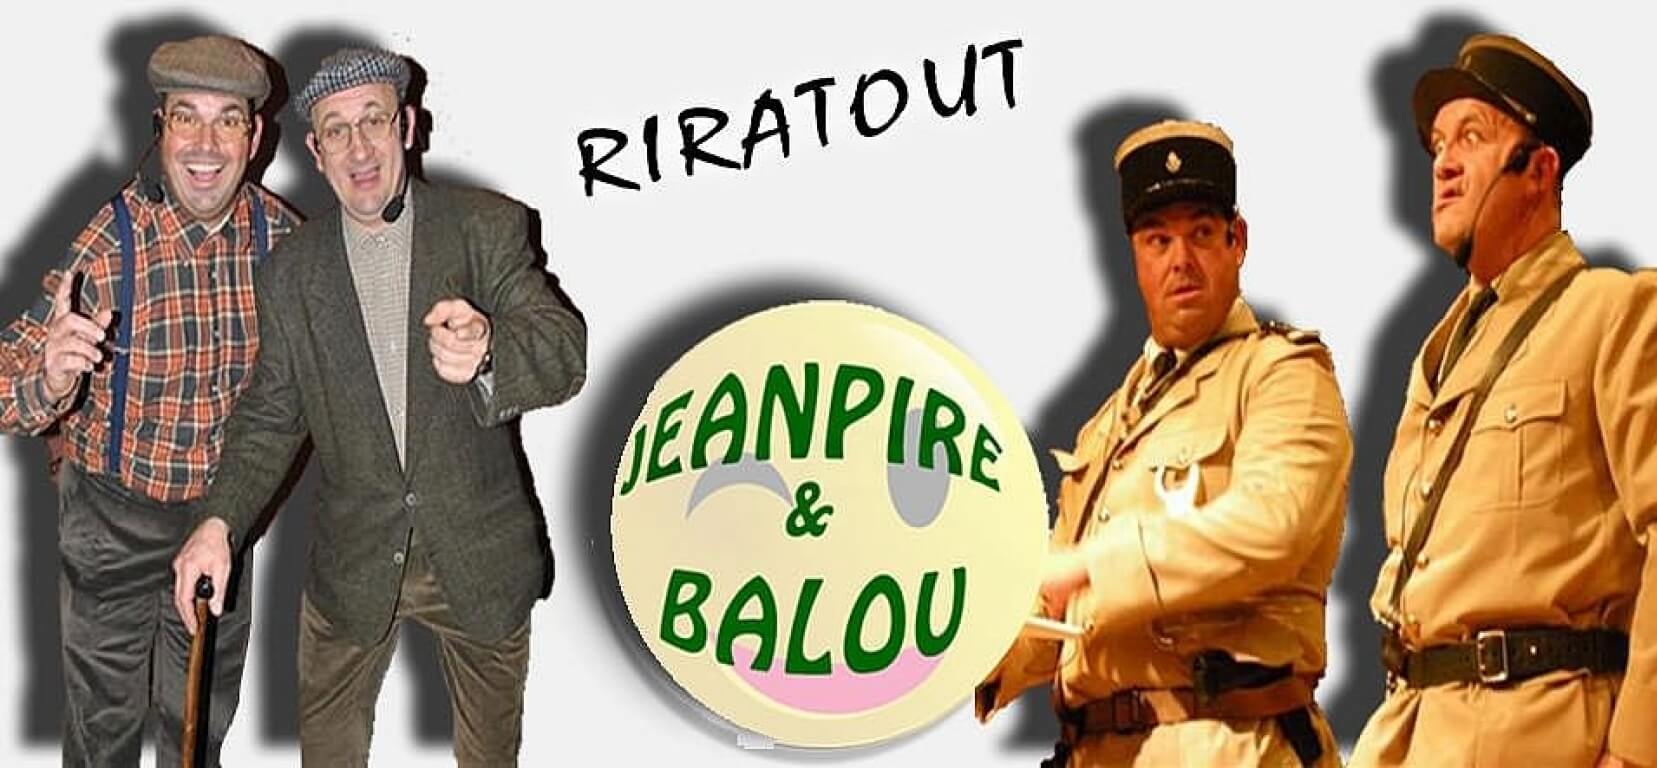 Jarret de Porc avec Jean-Pire et Balou